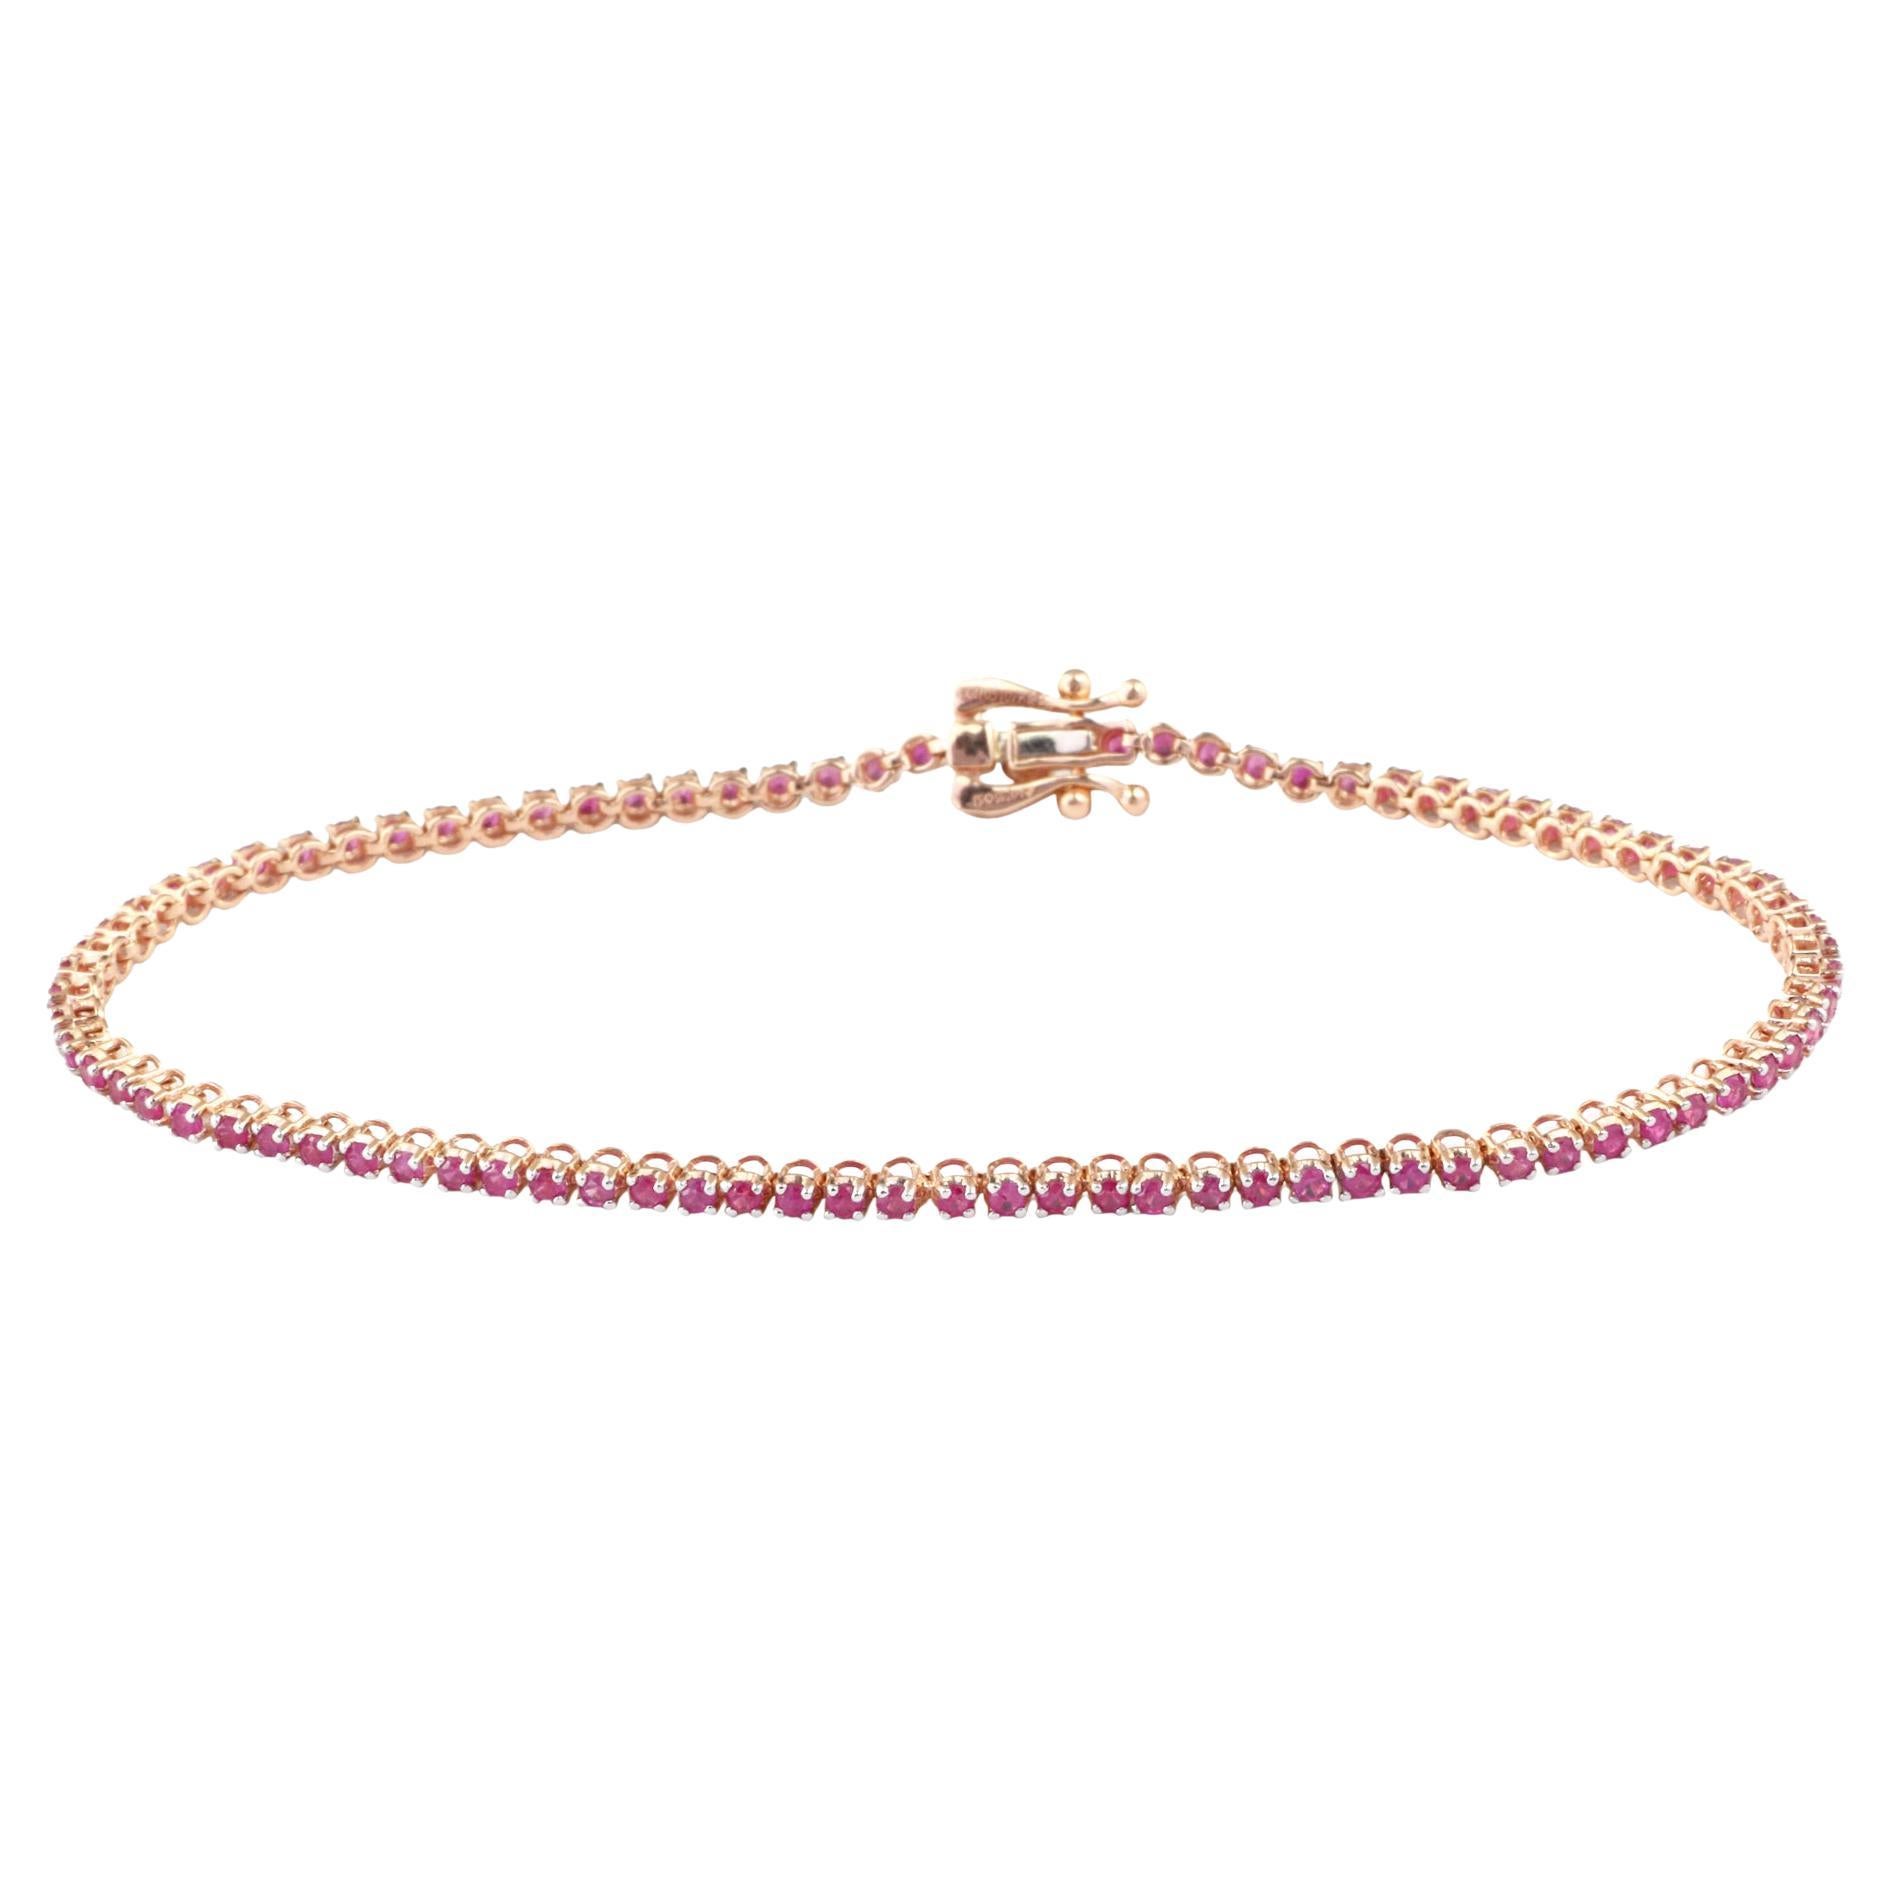 IGI Certified 1.60 Carat Natural Ruby Gemstone 18K Rose Gold Chain Bracelet For Sale